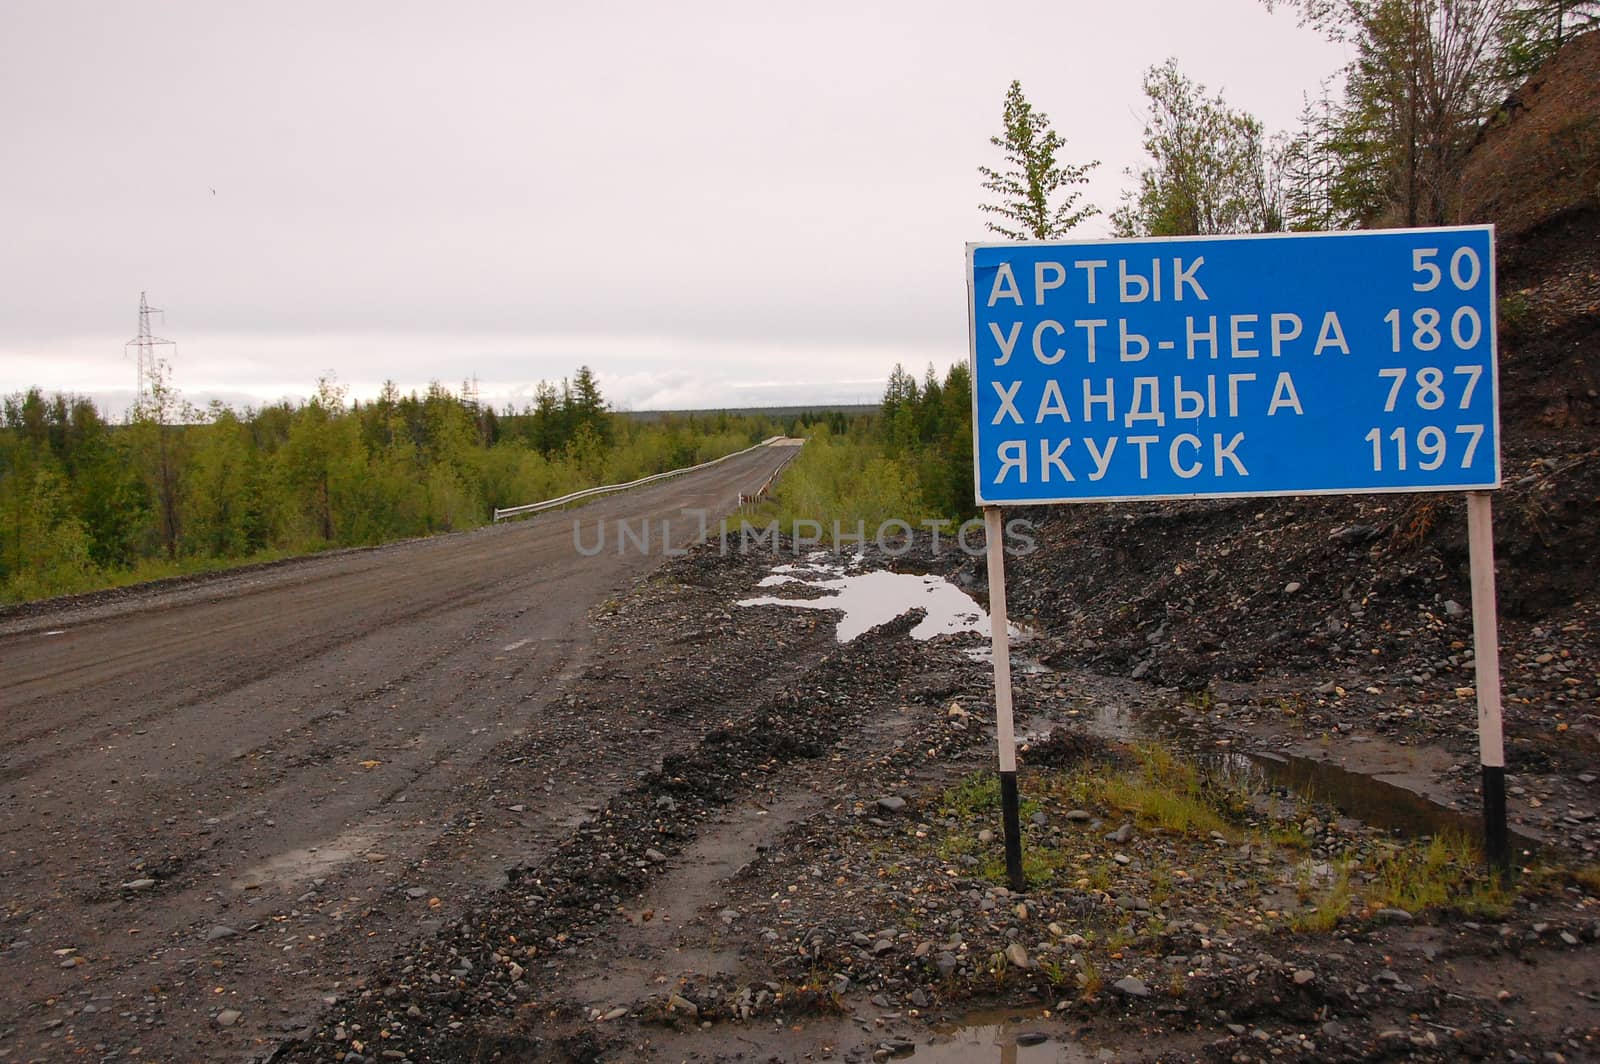 Road sign at gravel road Kolyma to Magadan highway Yakutia by danemo